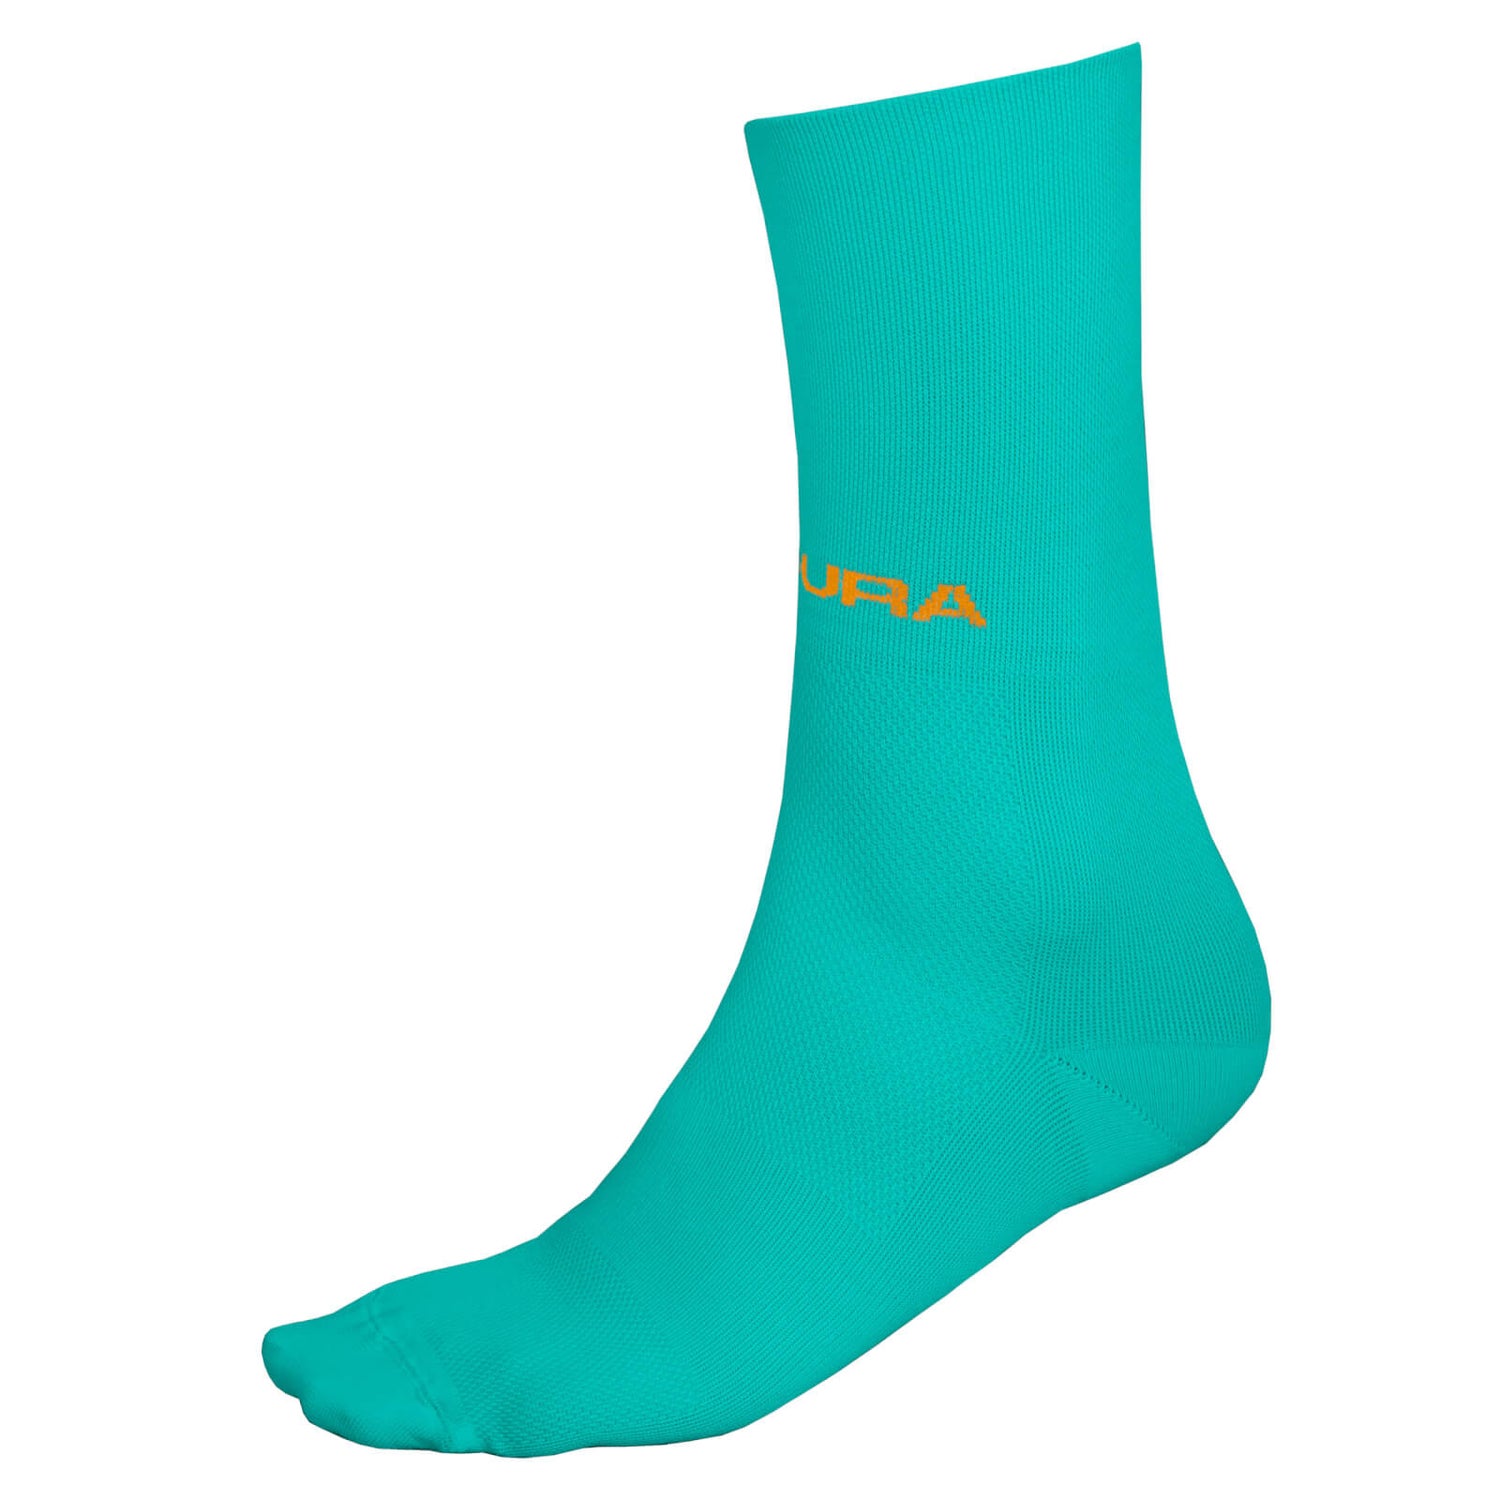 Men's Pro SL Sock II - Aqua - S-M